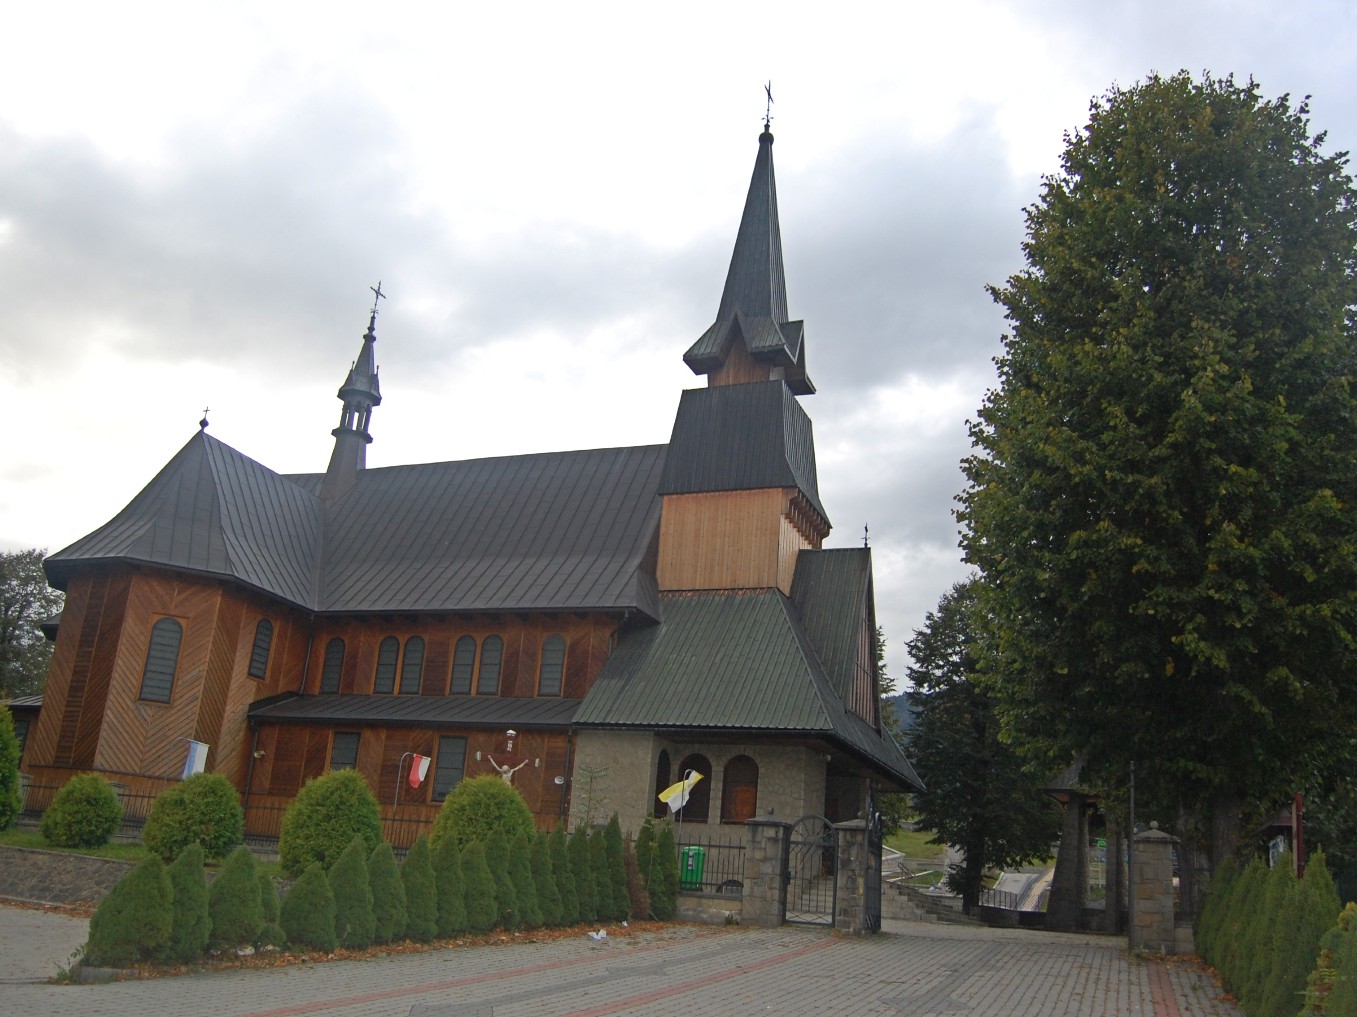 Podpisanie umowy na udzielenie dotacji dotyczącej konserwacji polichromii we wnętrzu budynku kościoła p.w. M.B.N.P. w Jurkowie